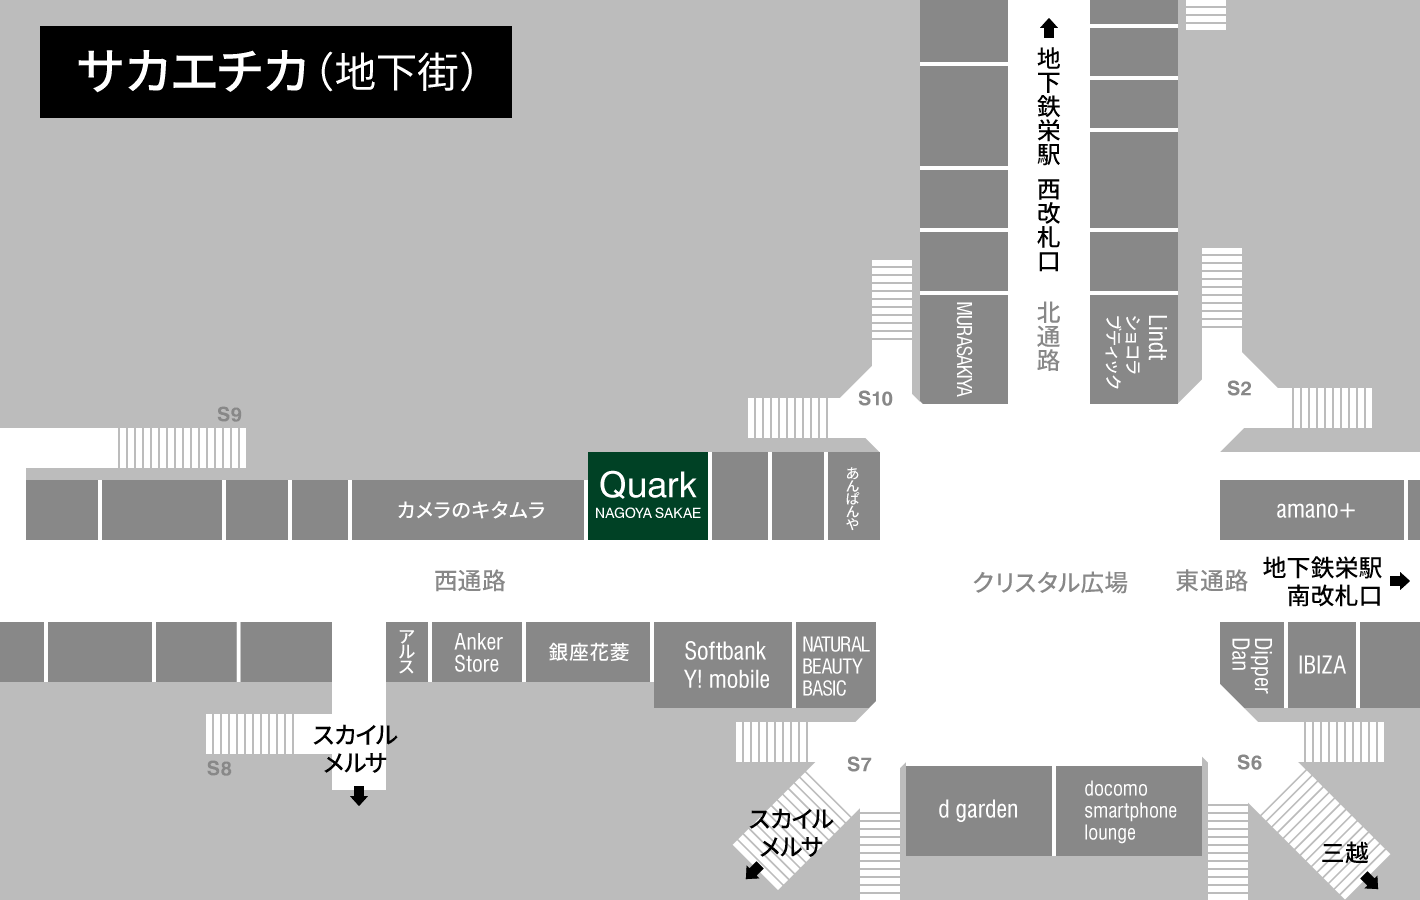 QUARK Nagoya Sakae map